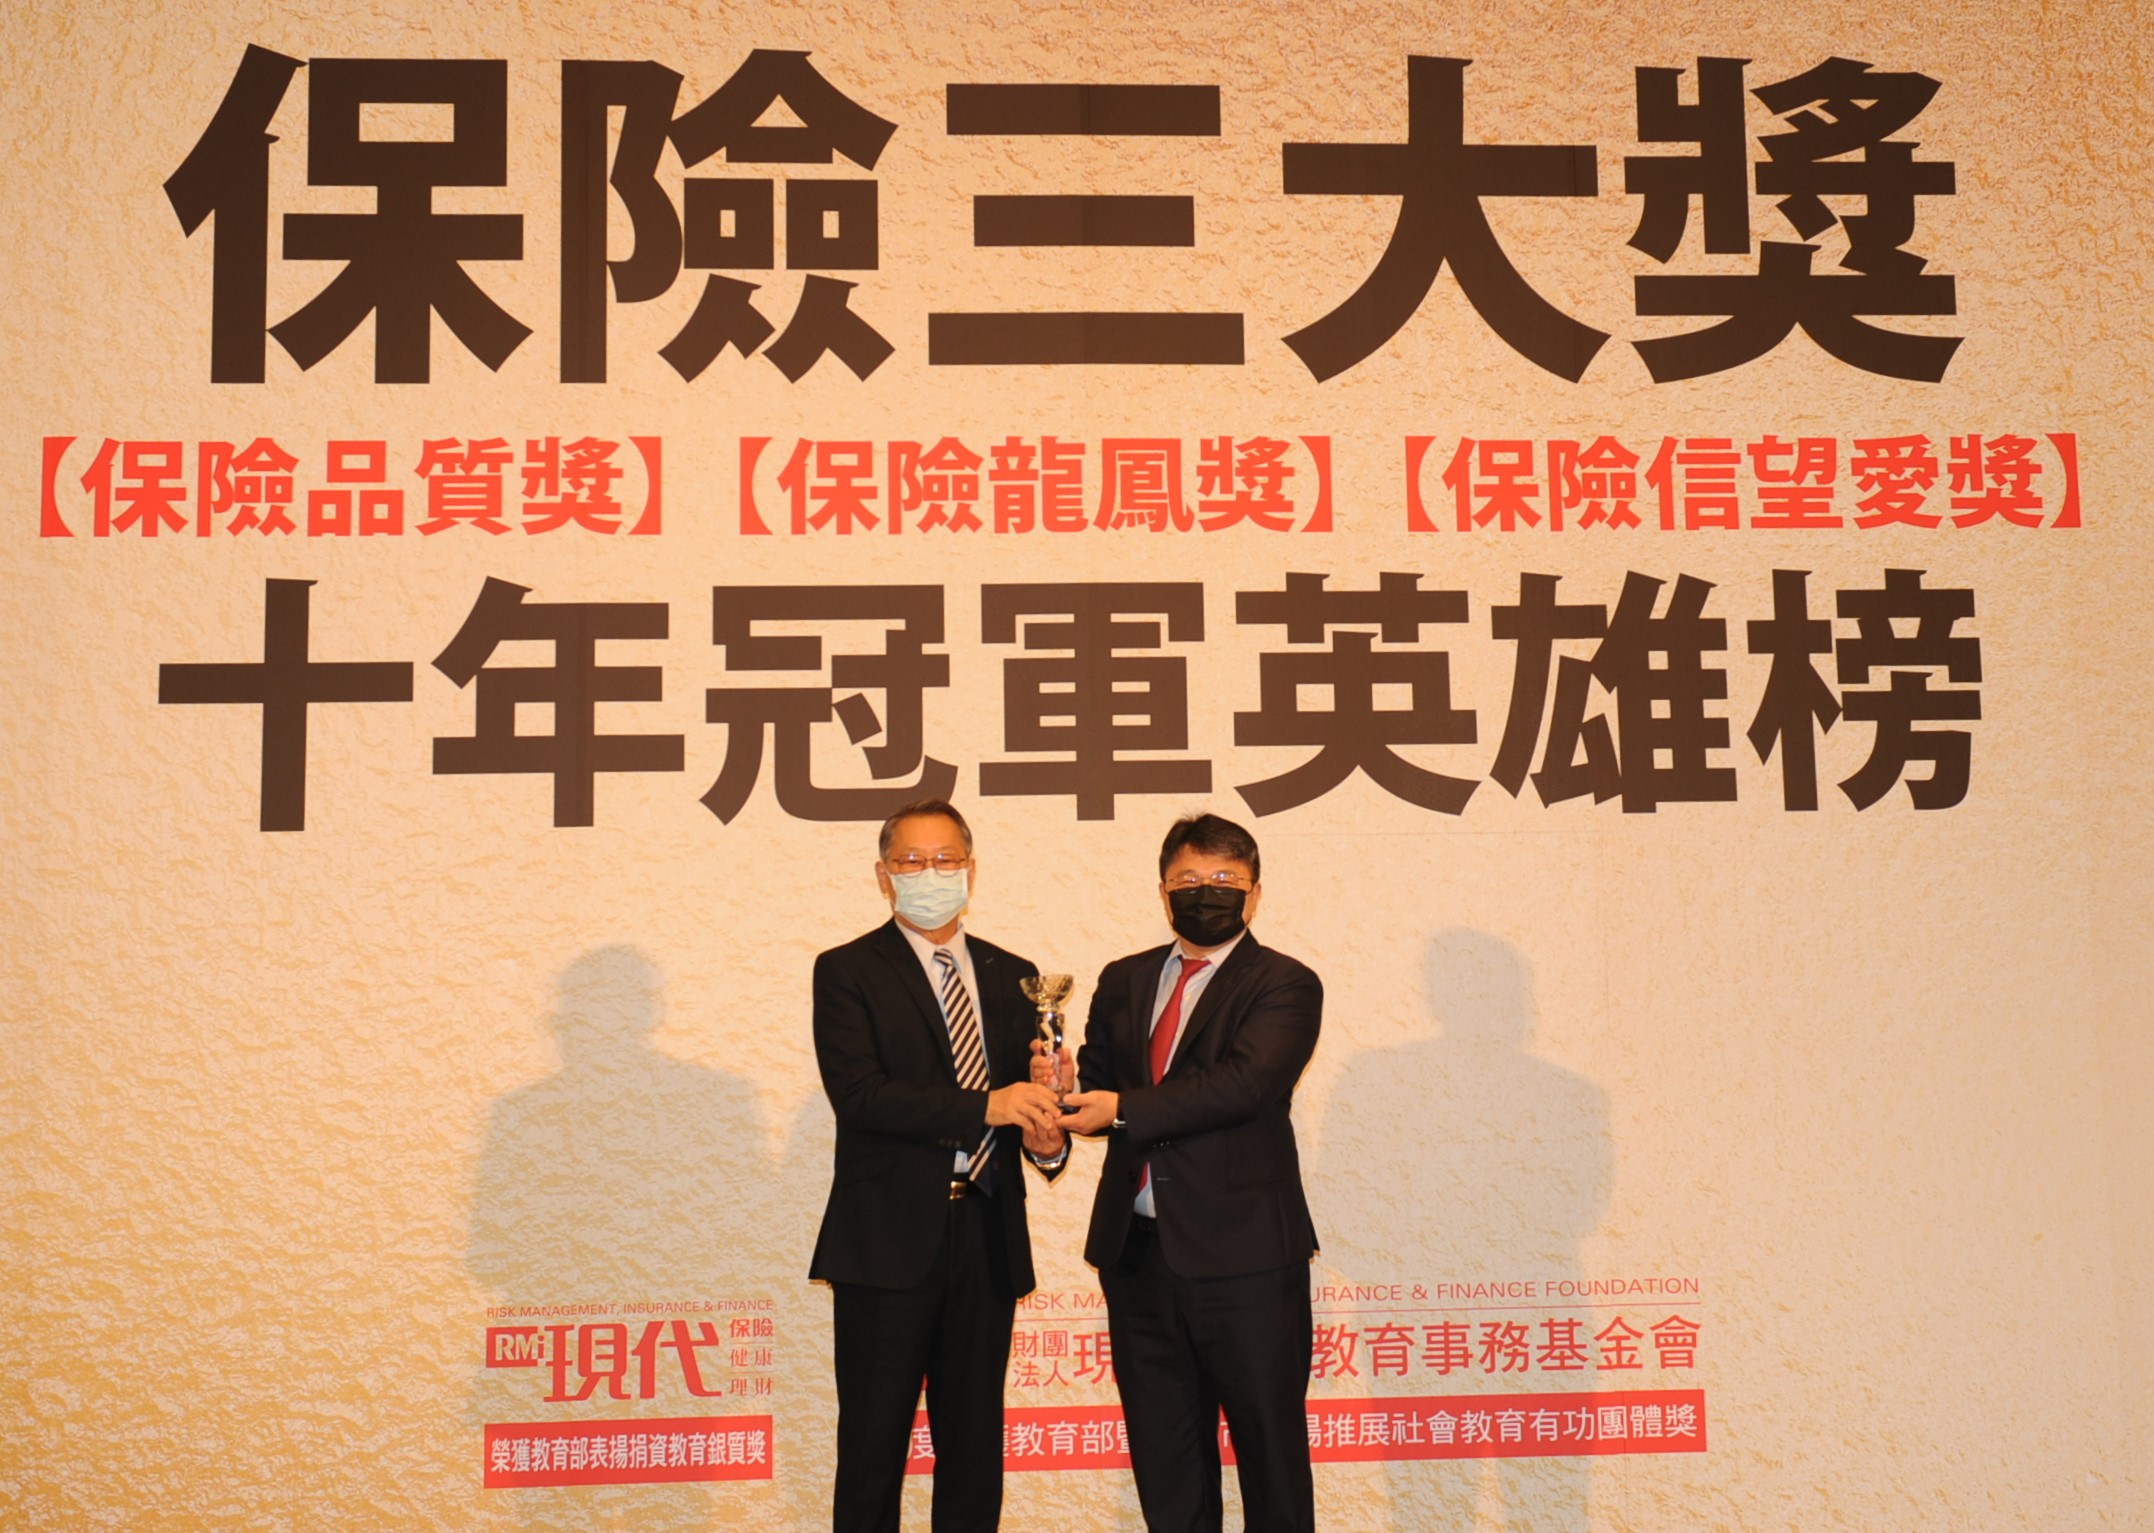 中華郵政公司壽險業務榮獲現代保險雜誌與現代保險教育事務基金會主辦之「保險品質獎」及「保險龍鳳獎」英雄榜之殊榮。